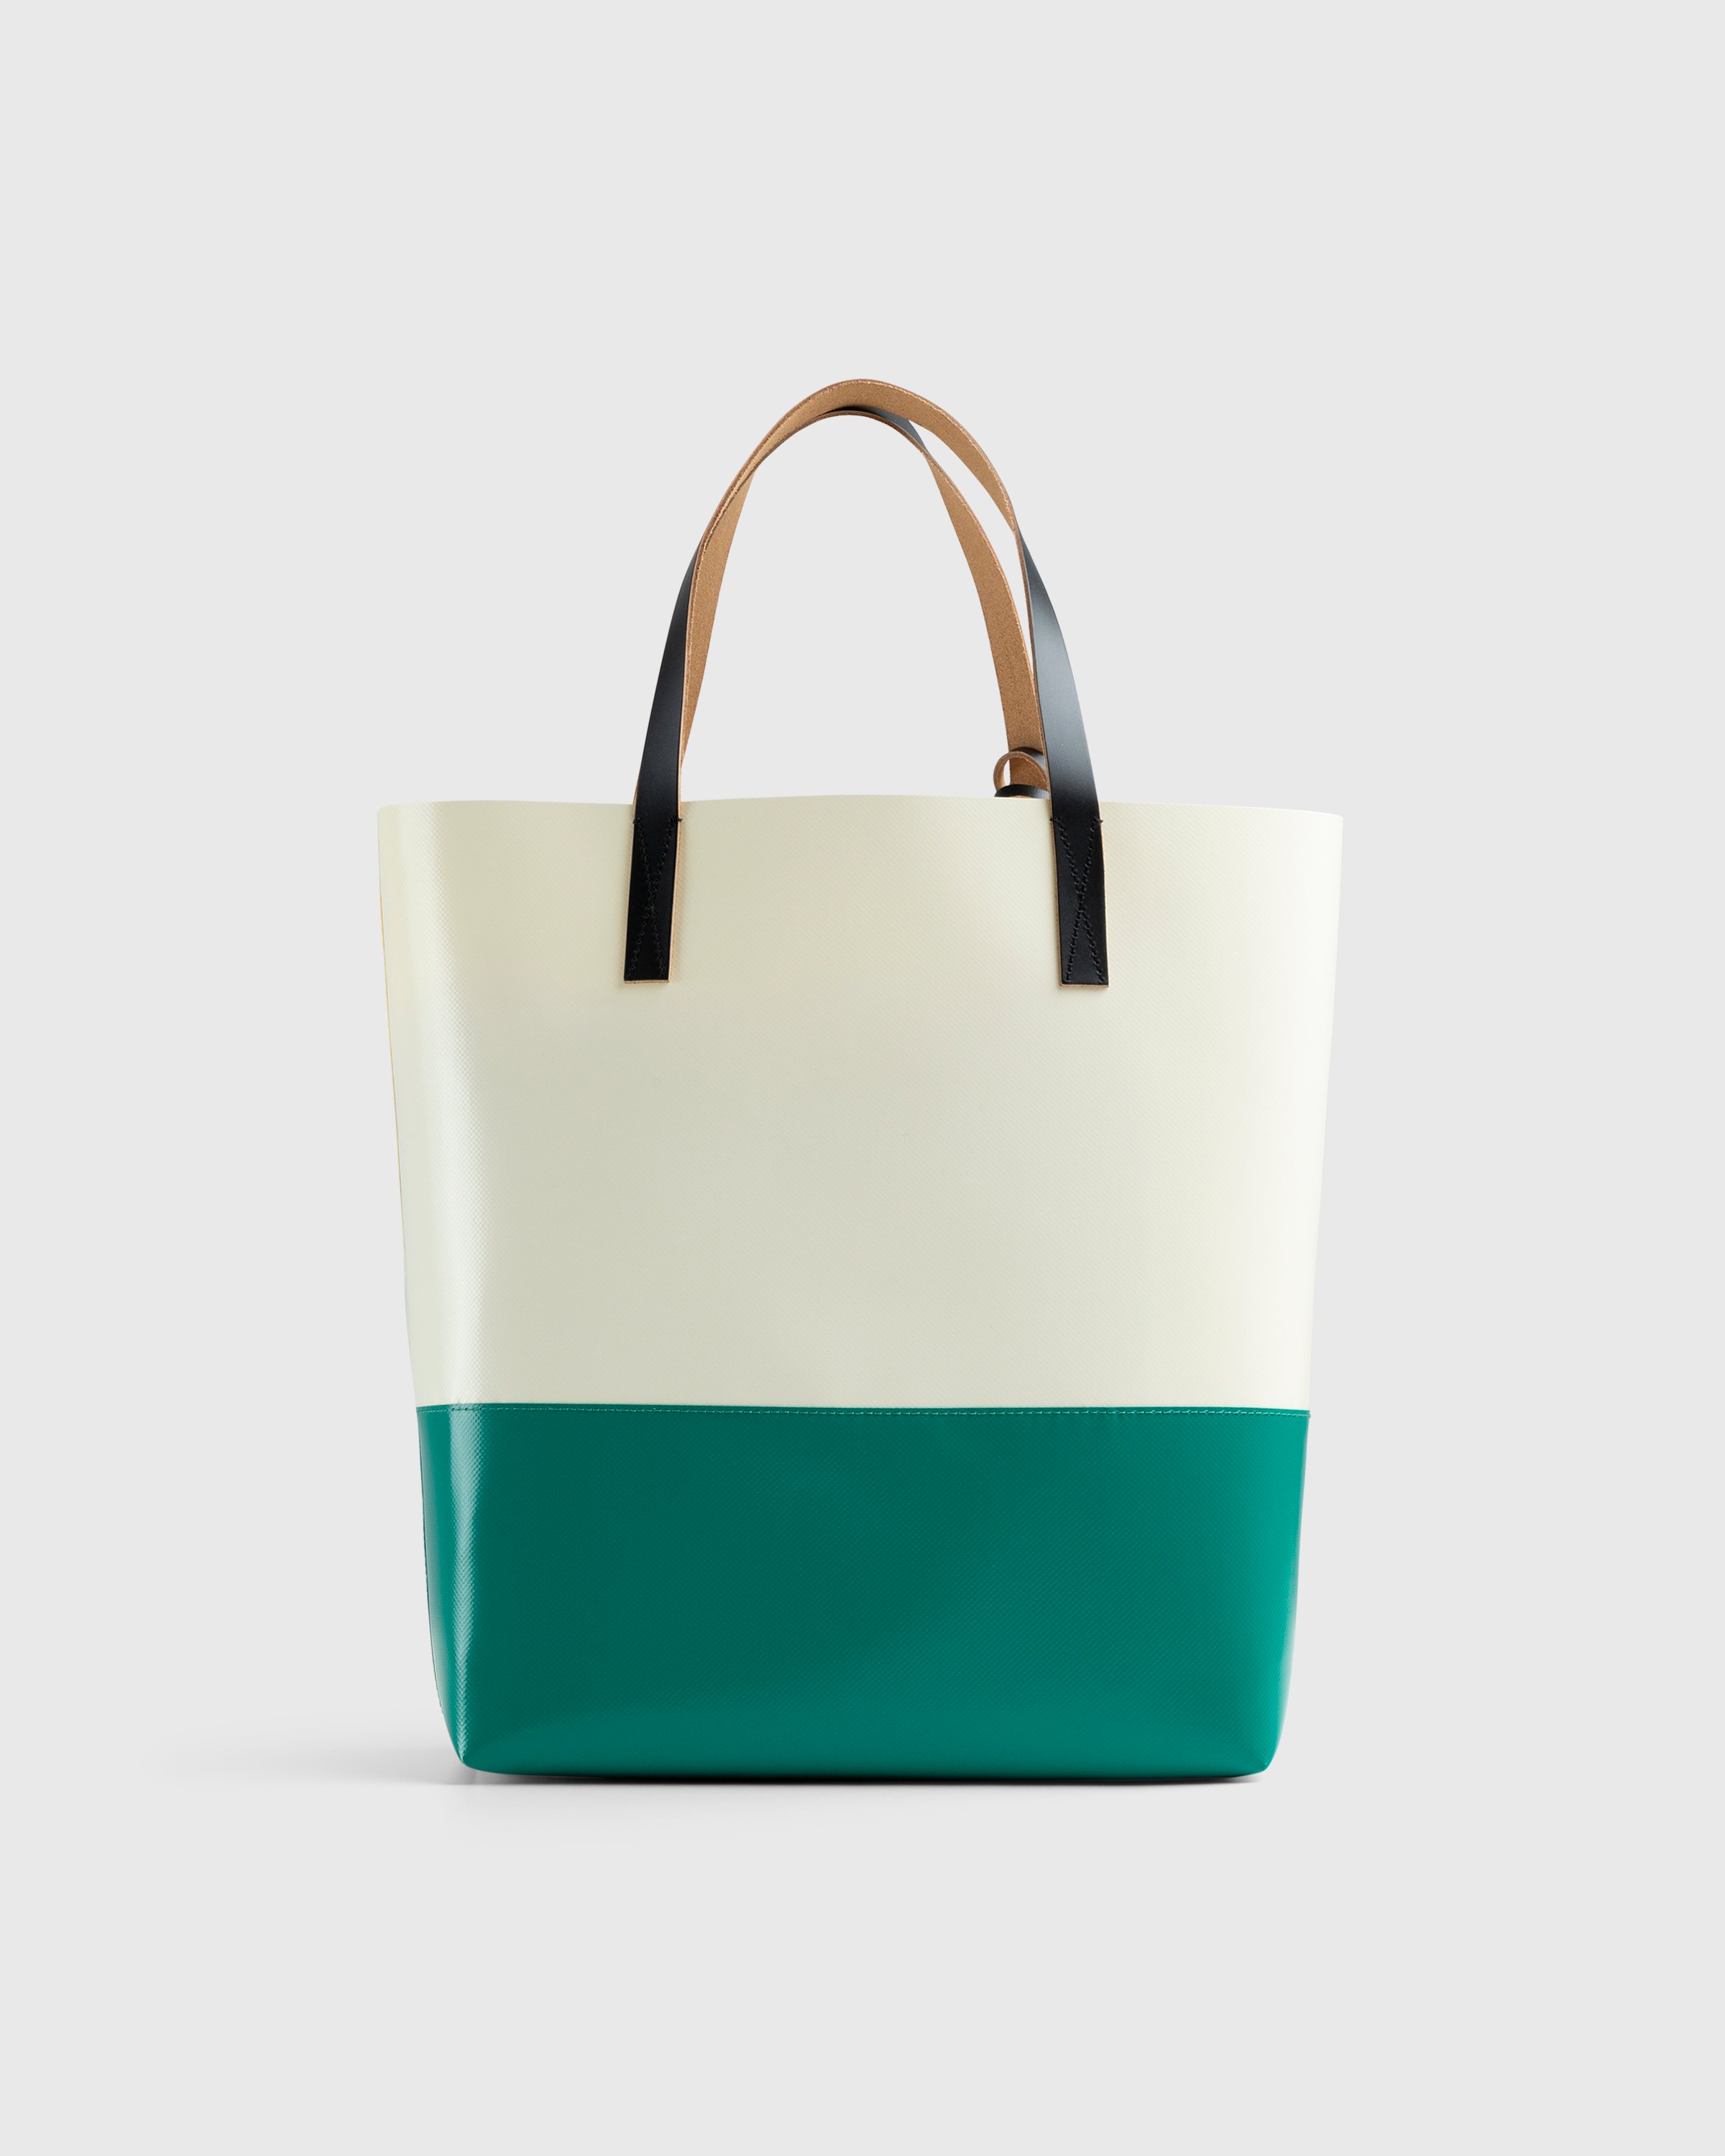 Marni - Tribeca Two-Tone Tote Bag White/Green - Accessories - Multi - Image 2